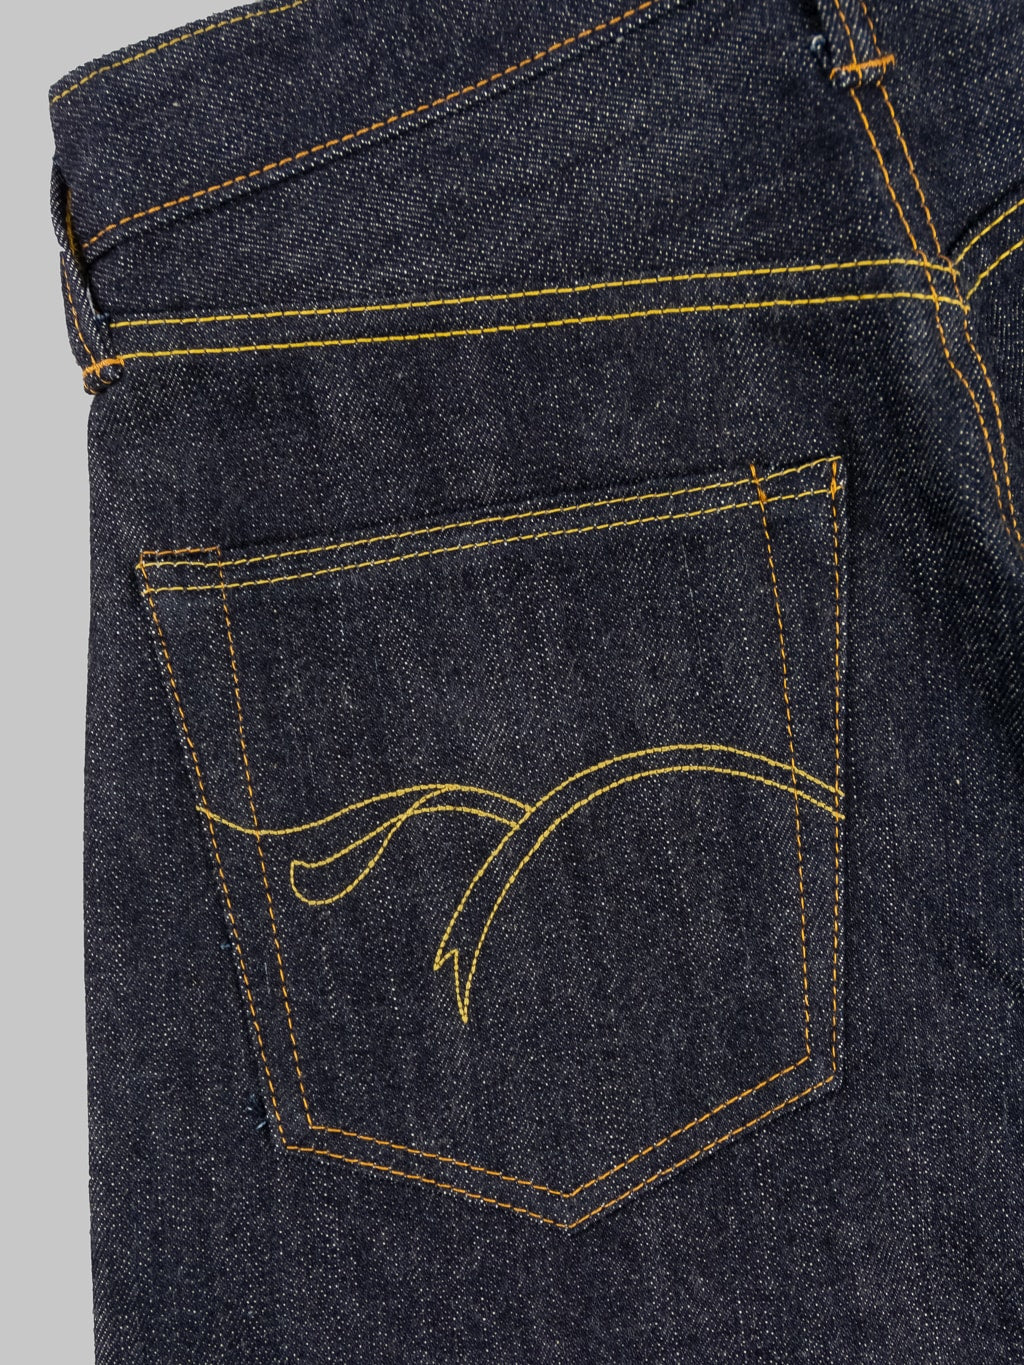 The Flat Head 3004 Regular Straight Jeans  stitchin